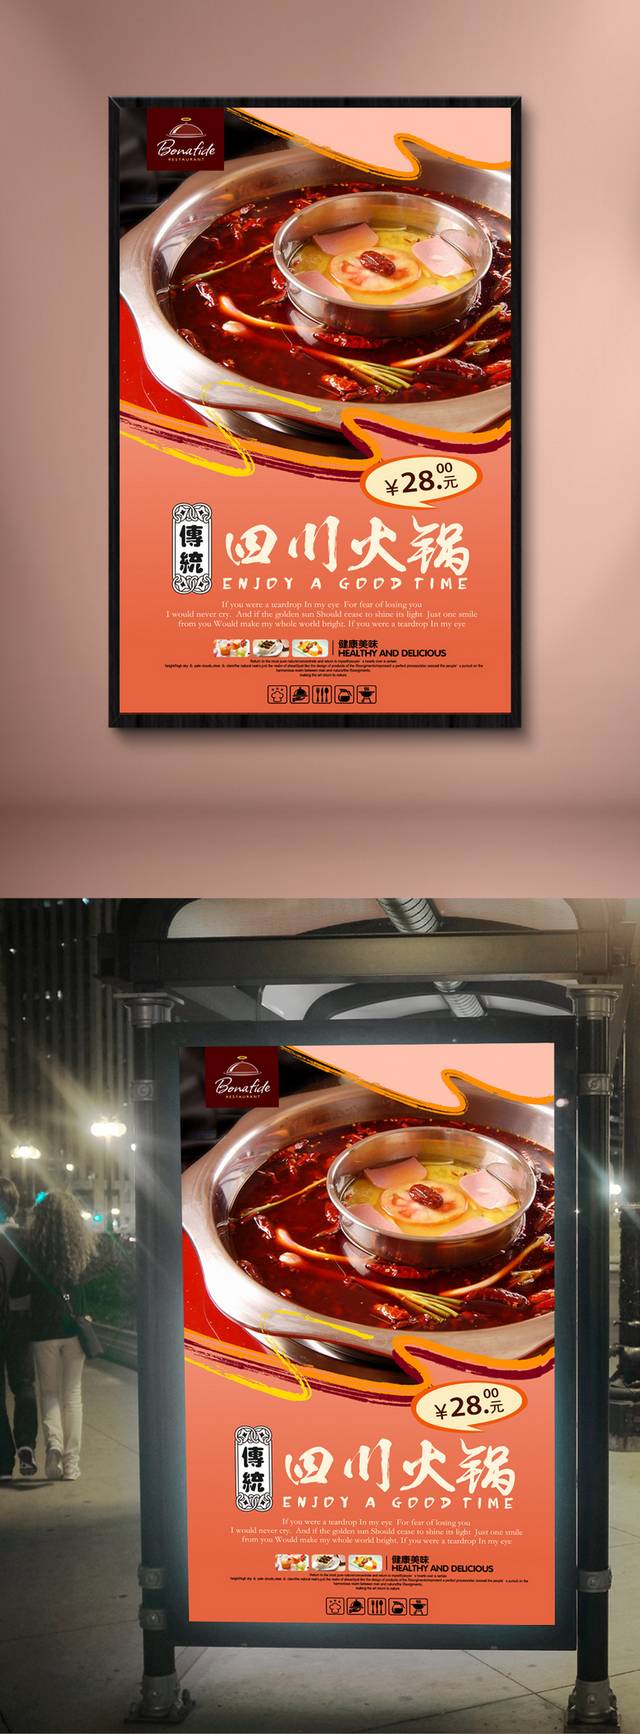 四川火锅美食促销宣传海报设计